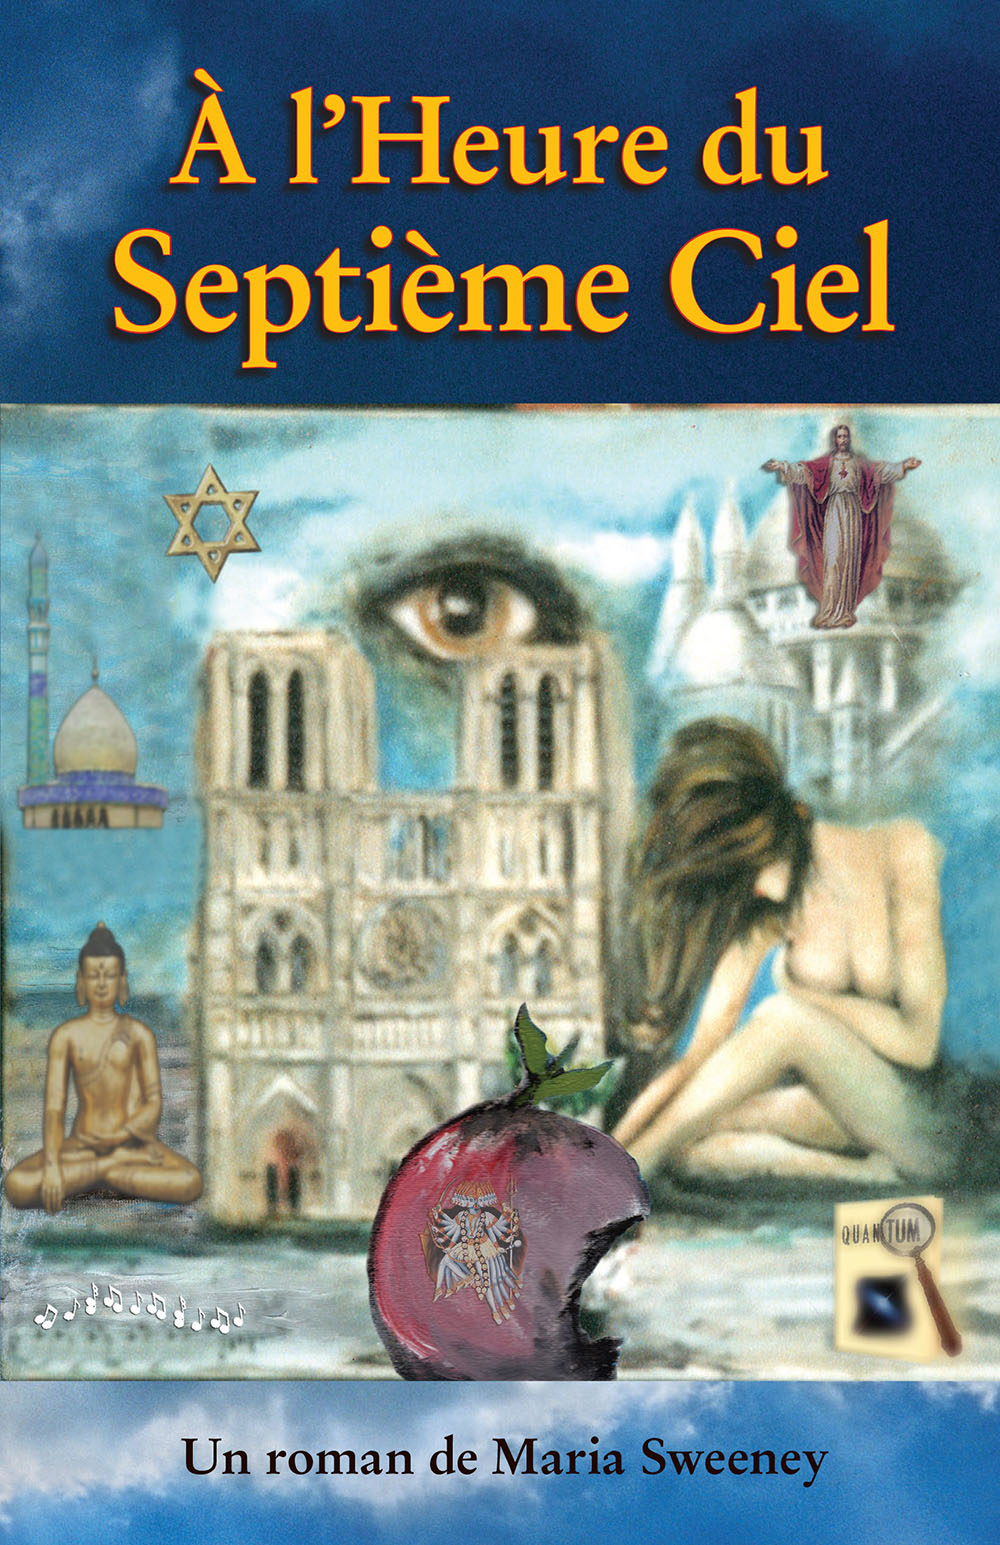 La couverture de «À l’Heure du Septième Ciel.»